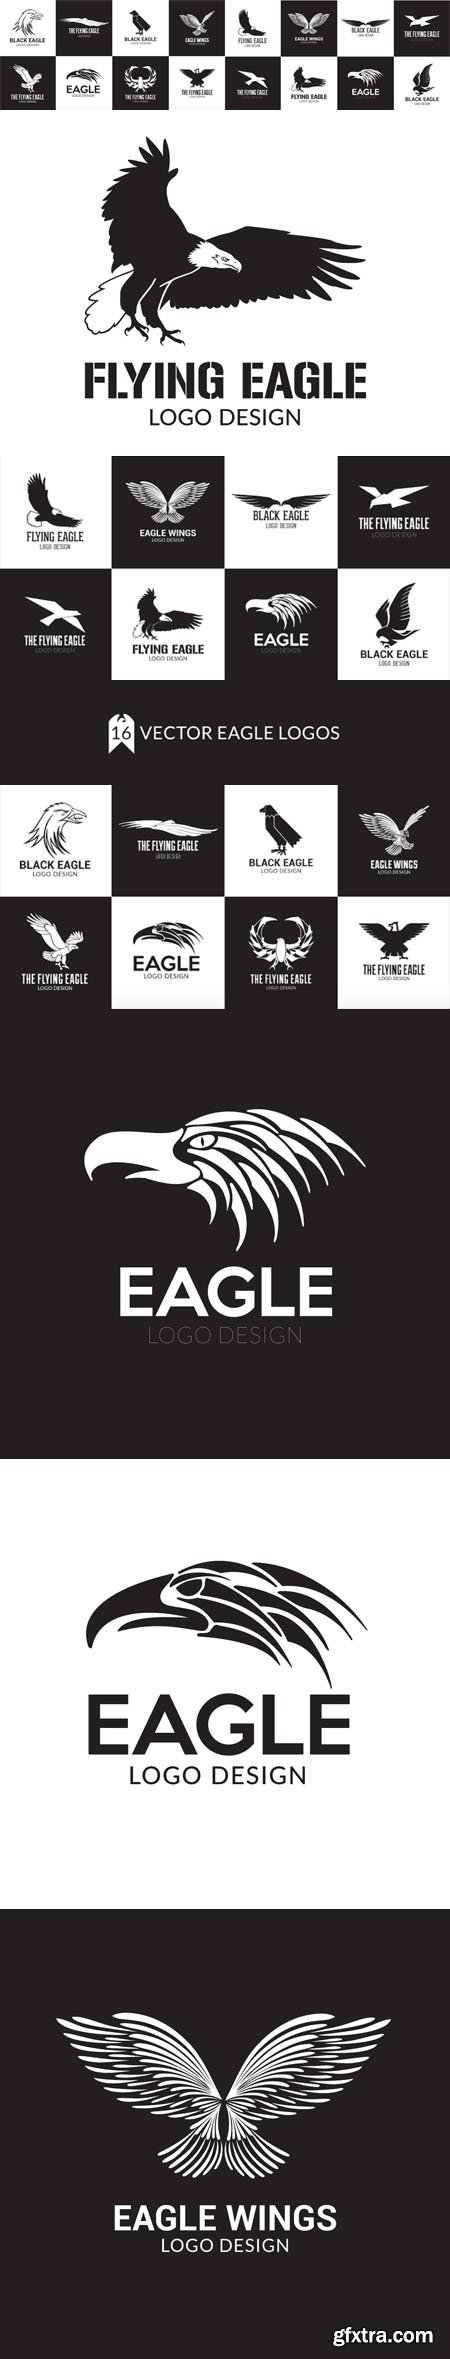 Eagle Logo Design Pack - 16 Logo